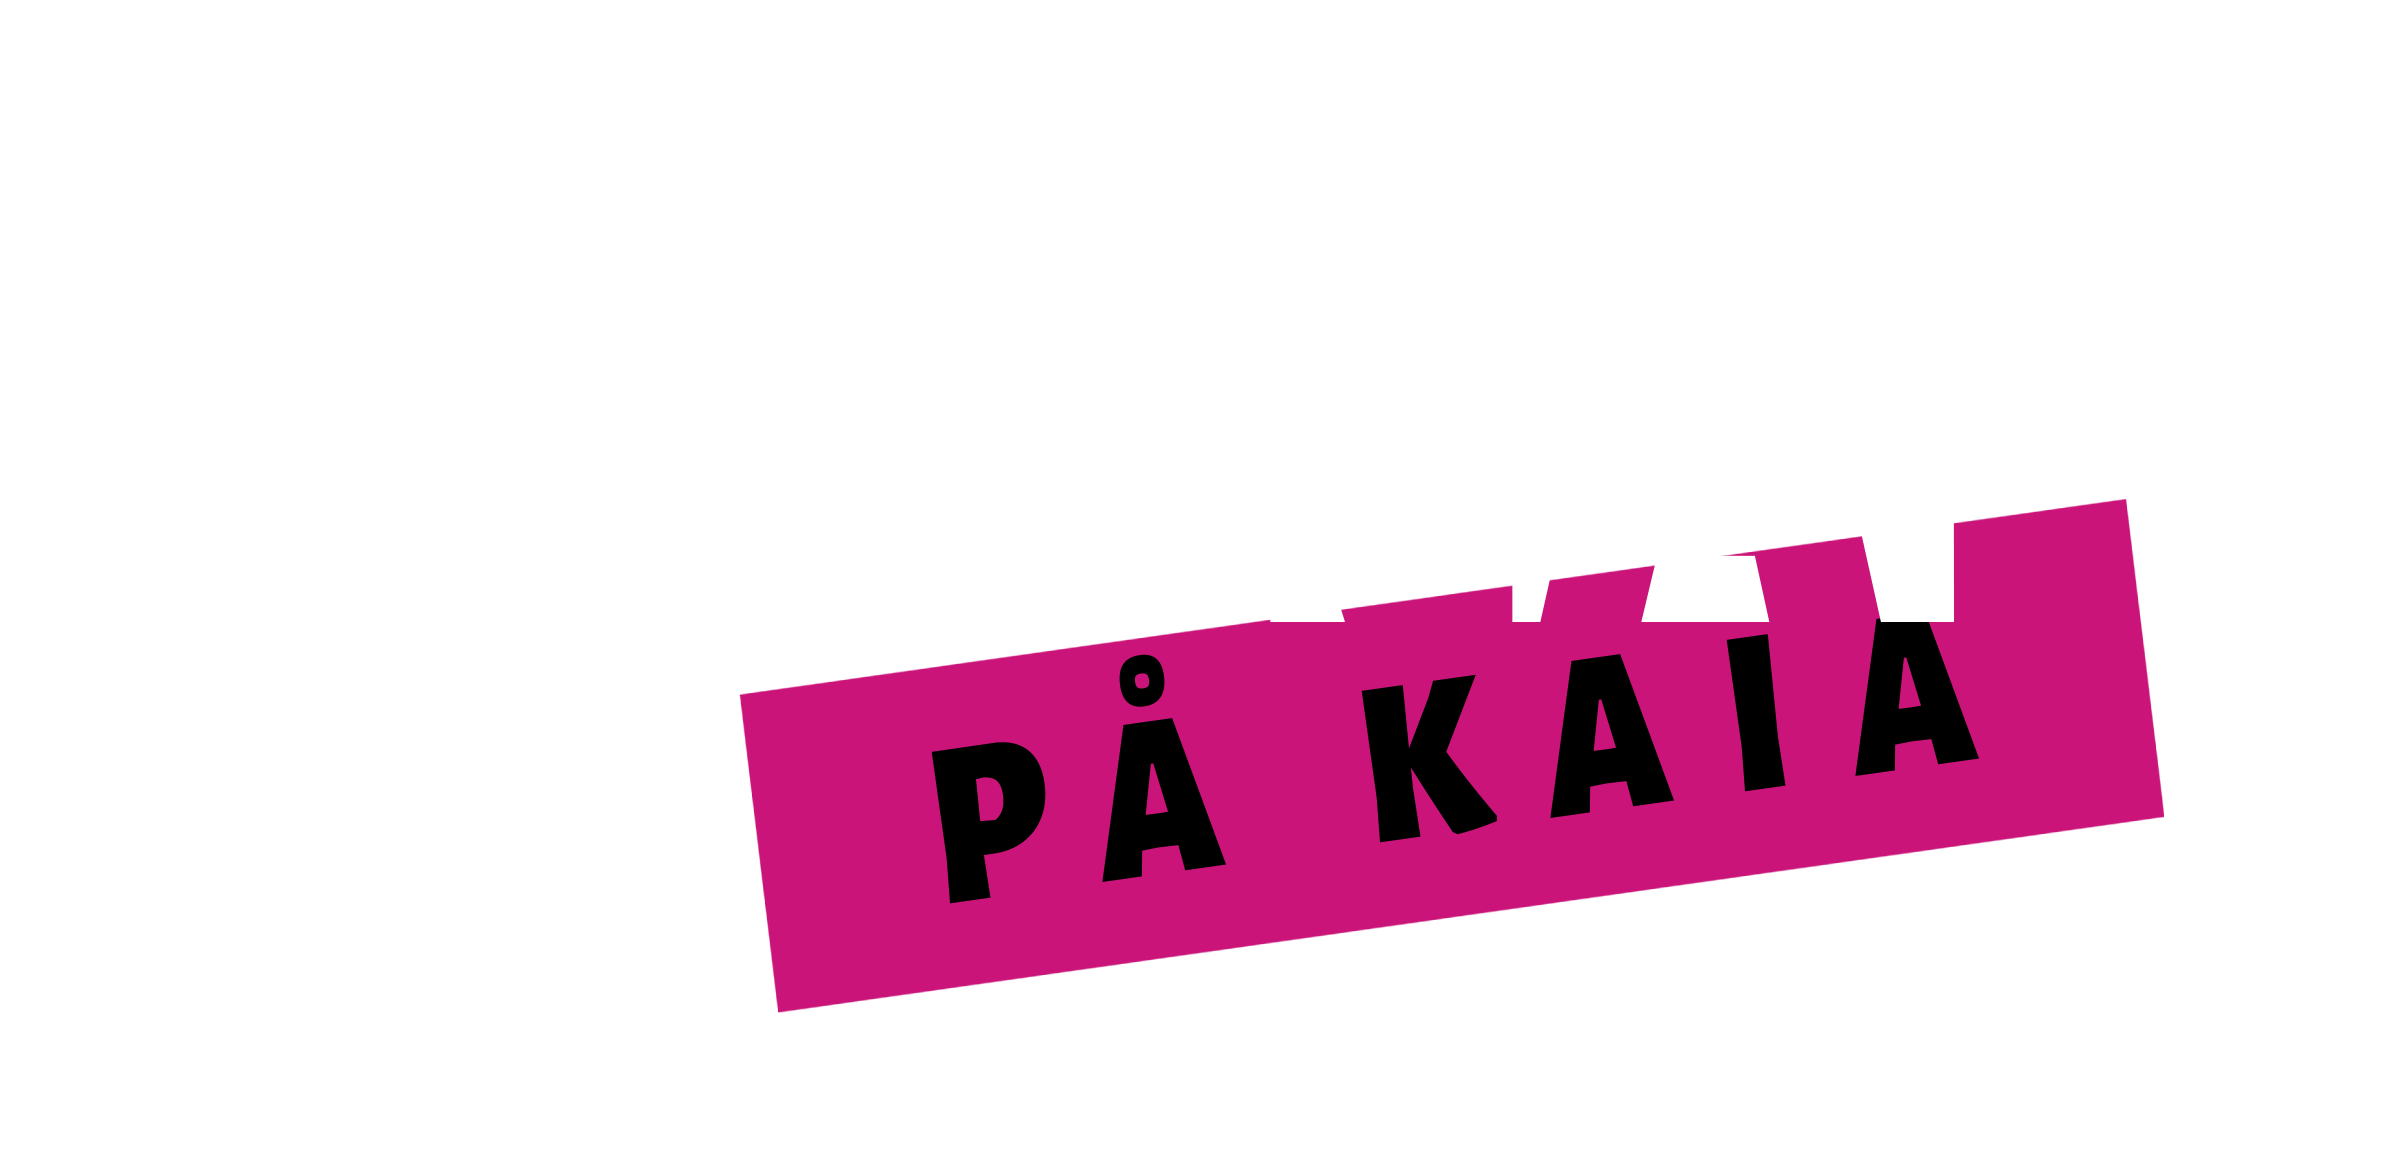 Havna på kaia logo_hvit